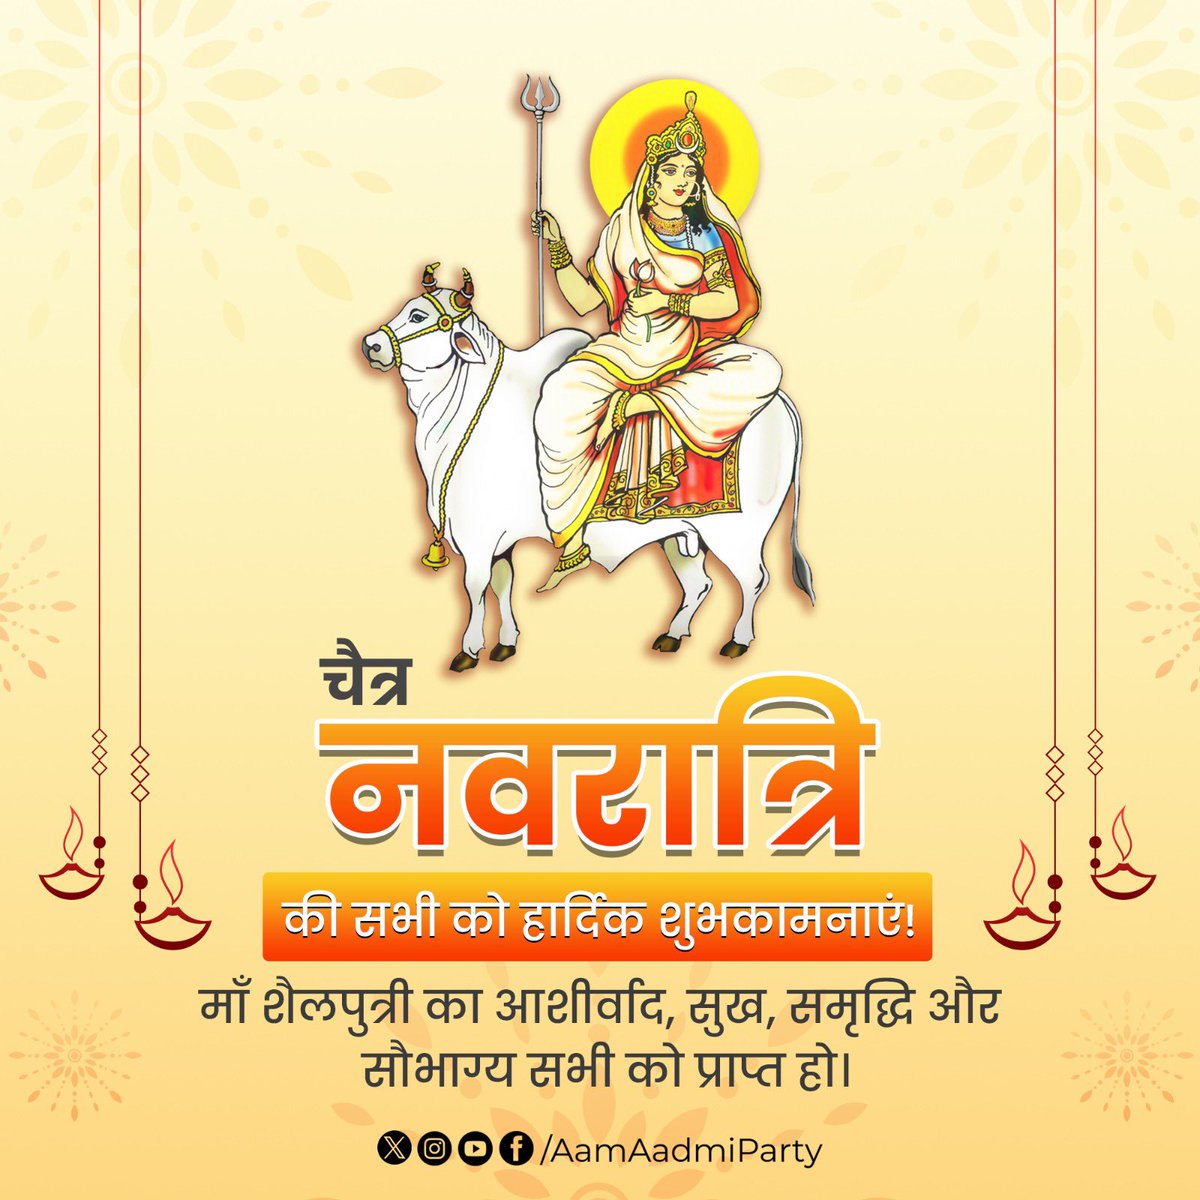 चैत्र नवरात्रि की सभी को हार्दिक शुभकामनाएं!

#HappyNavratri